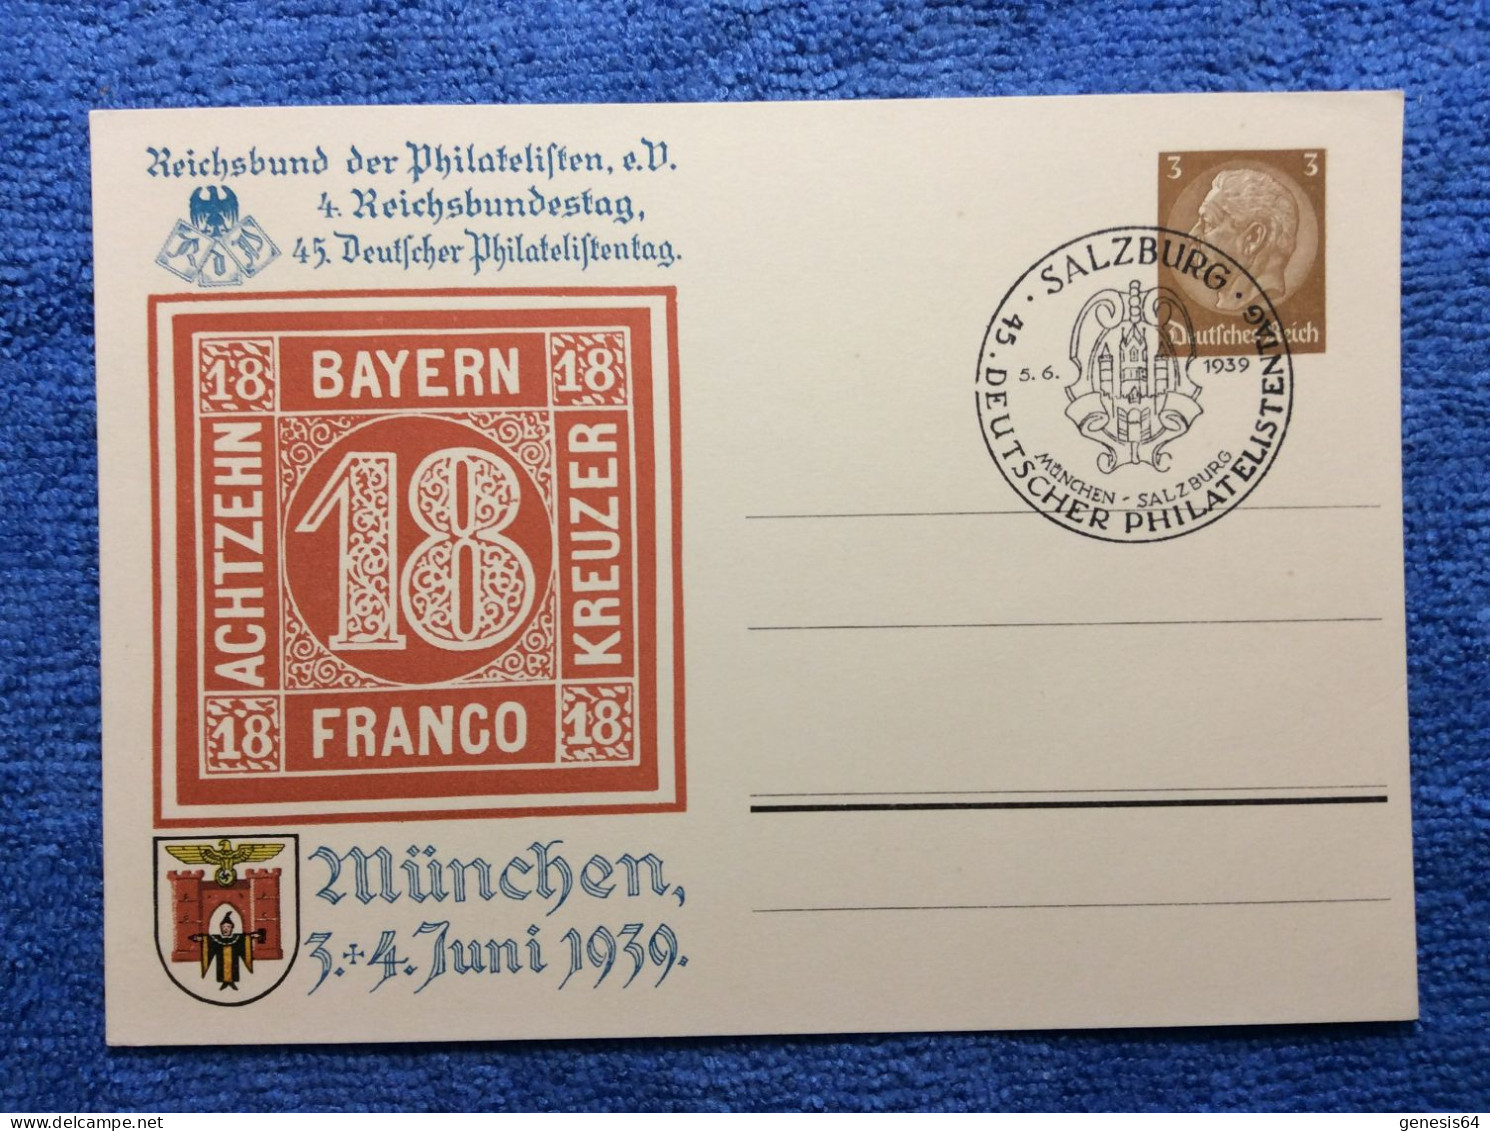 DR - PP122 C106/01 - SST "Salzburg 45. Deutscher Philatelistentag München-Salzburg" (1ZKPVT041) - Private Postal Stationery